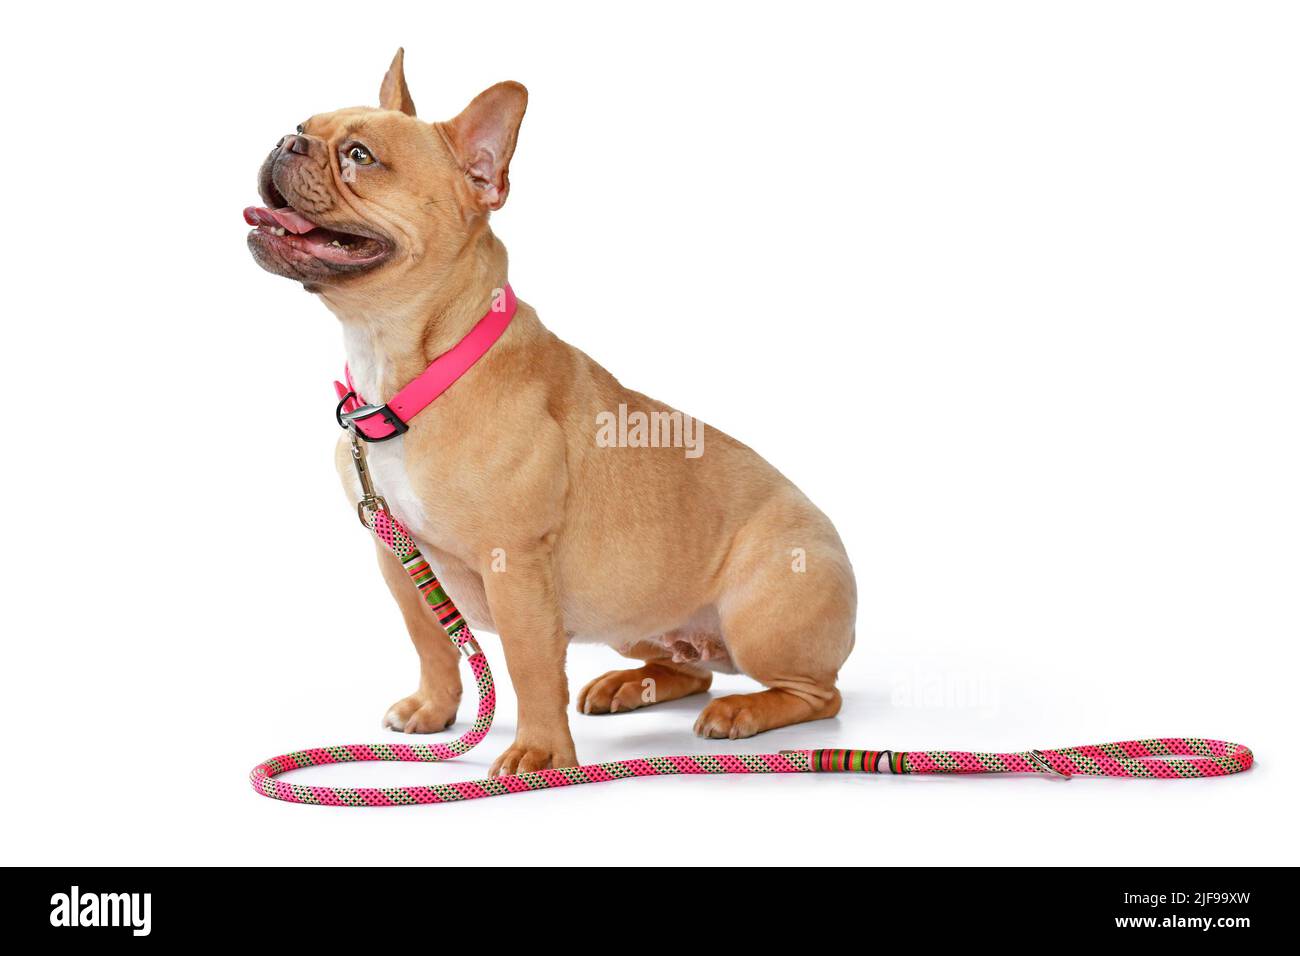 Vista laterale del cane Bulldog francese rosso fawn con colletto rosa con guinzaglio di corda su sfondo bianco Foto Stock